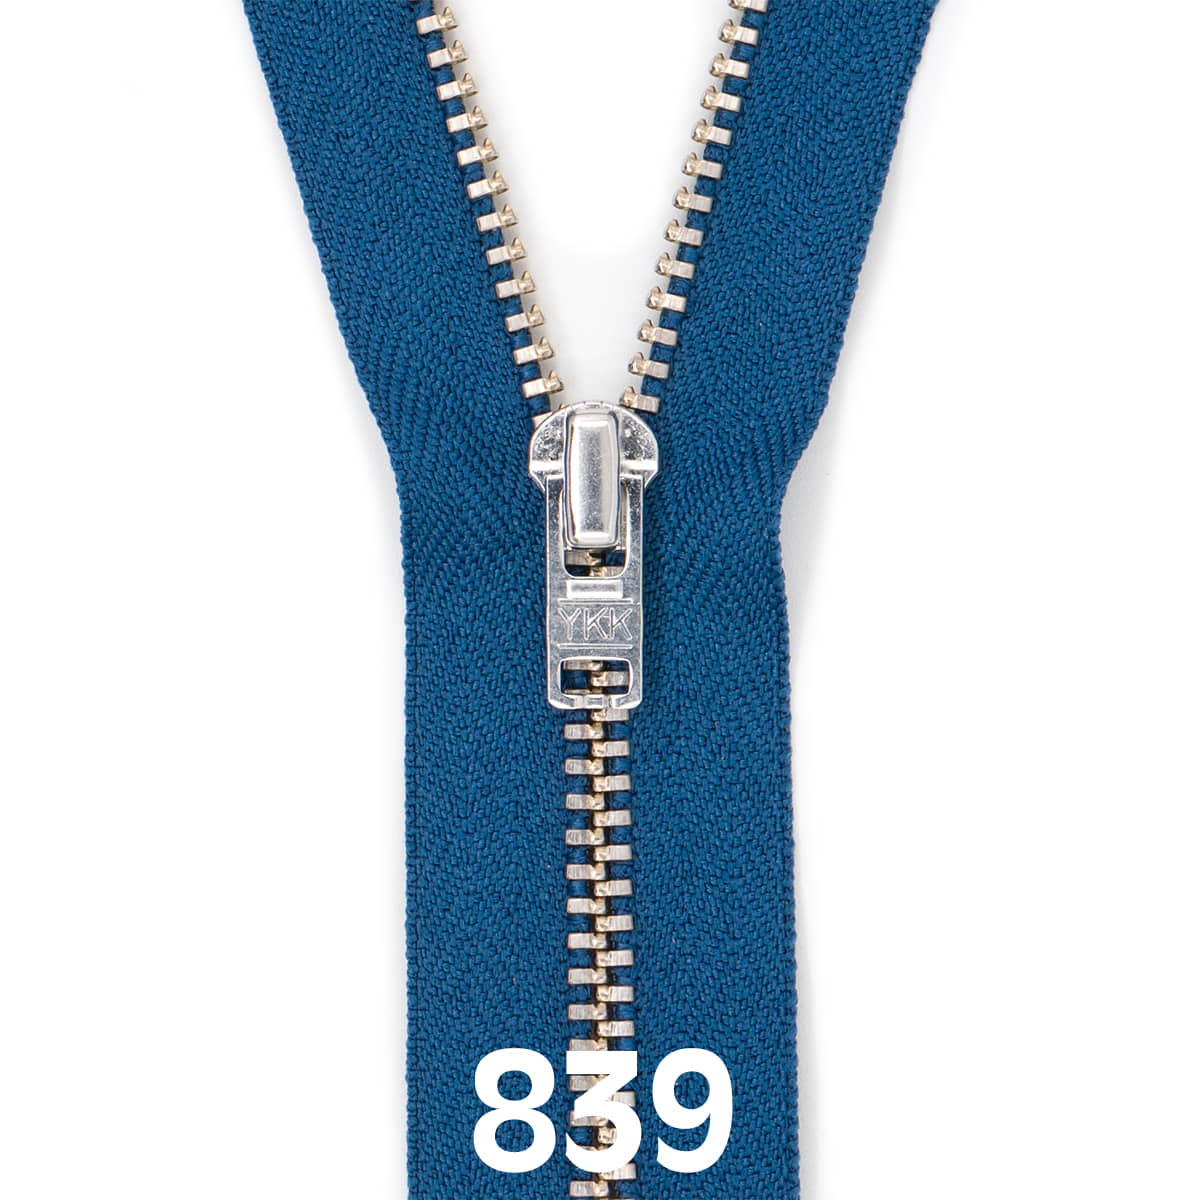 Broek rits metaal | zilver fijn | 20 cm | YKK | 839 jeans blauw Rits RITS-BROEK-SILVER-4.5-20CM-839-JEANS-BLUE - Fourniturenkraam.nl